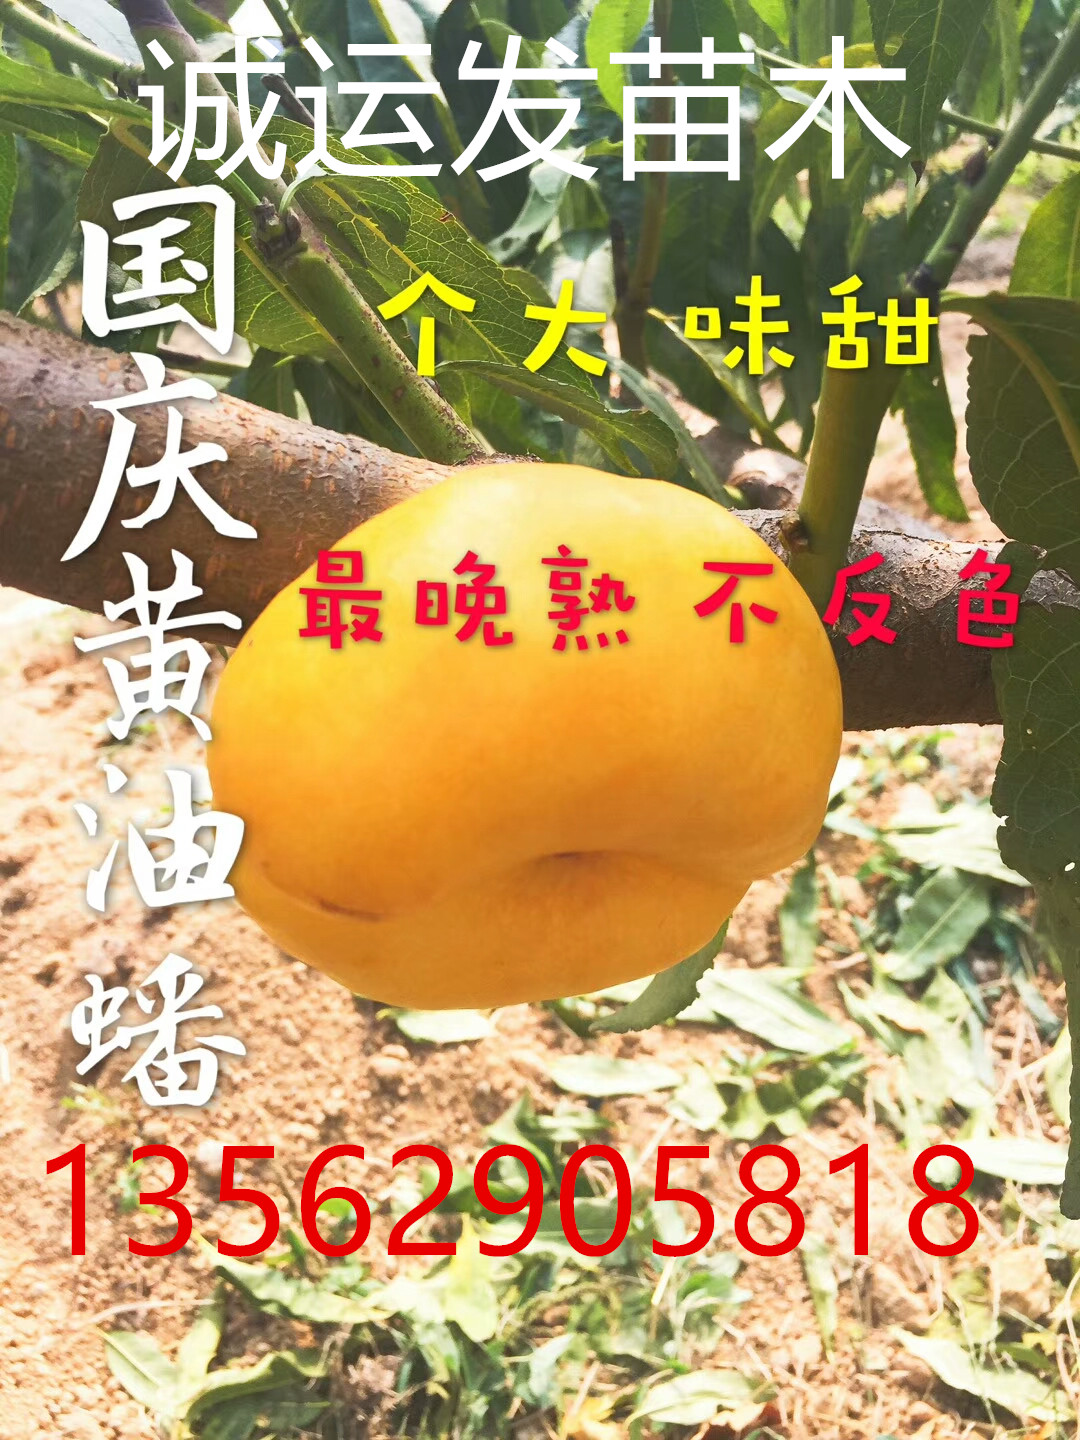 早熟的黄桃品种蜜4号图片		